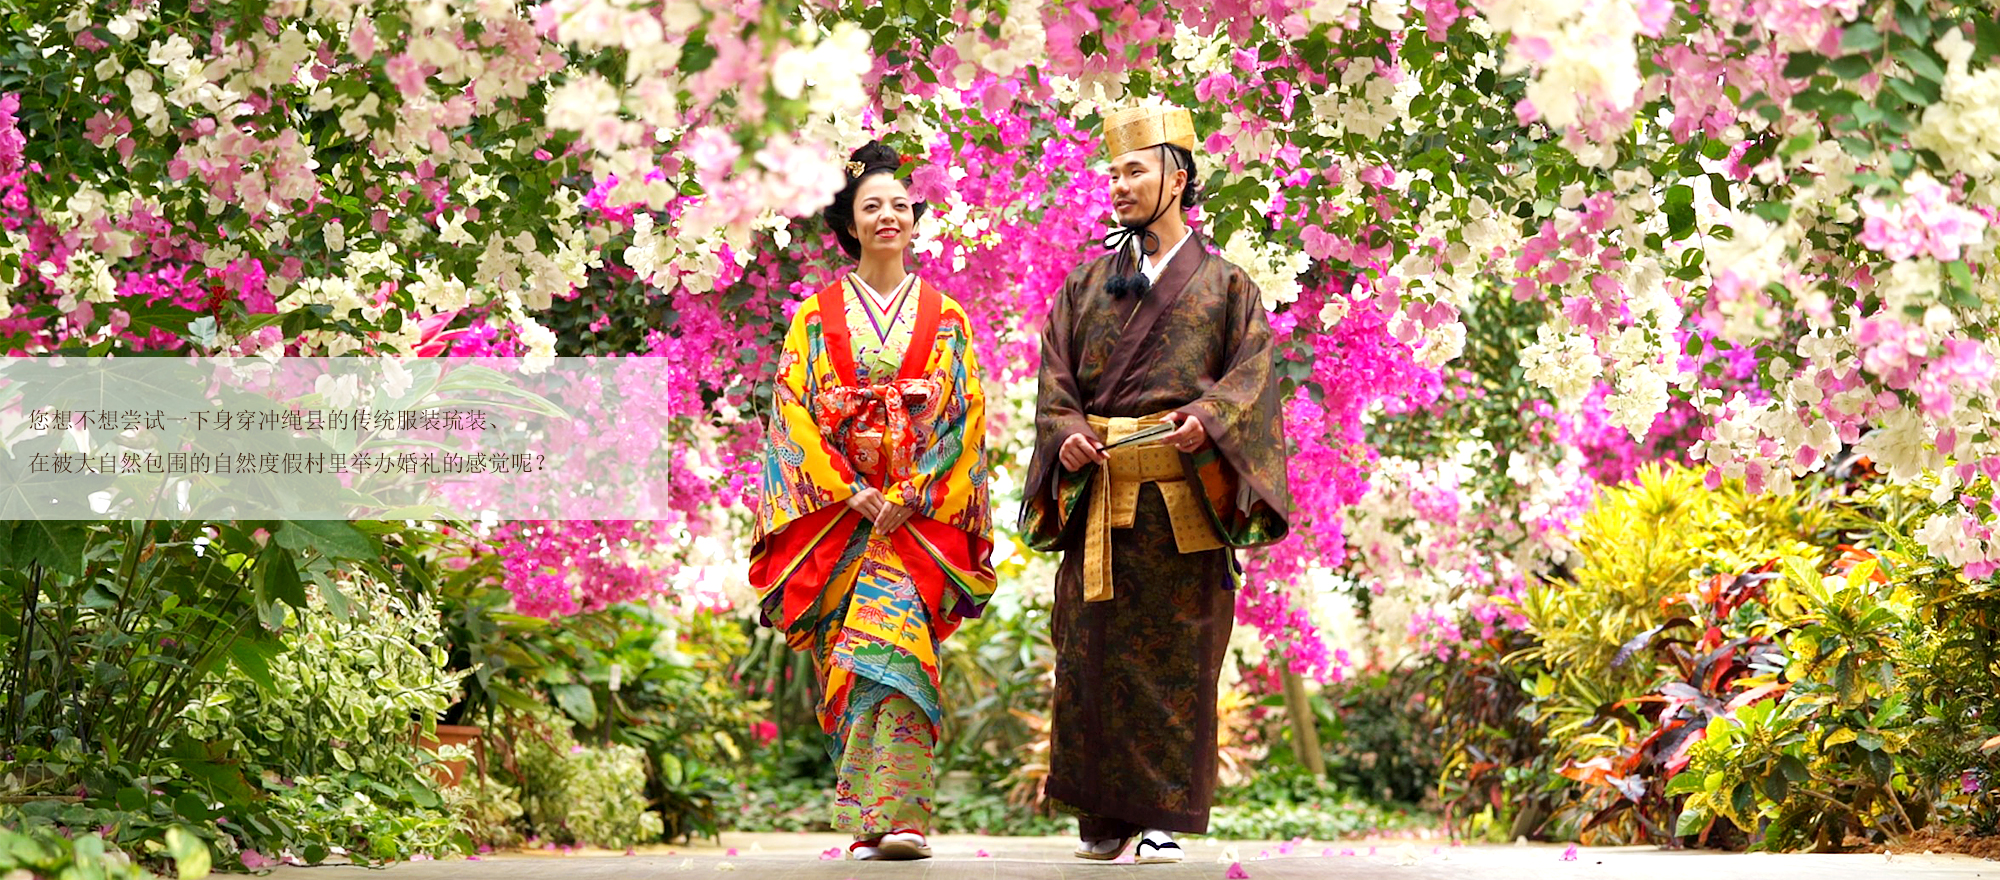 您想不想尝试一下身穿冲绳县的传统服装琉装、在被大自然包围的自然度假村里举办婚礼的感觉呢？本视频为您介绍的是带您周游宫古岛人气景点、具有南国特色的度假村式婚礼。